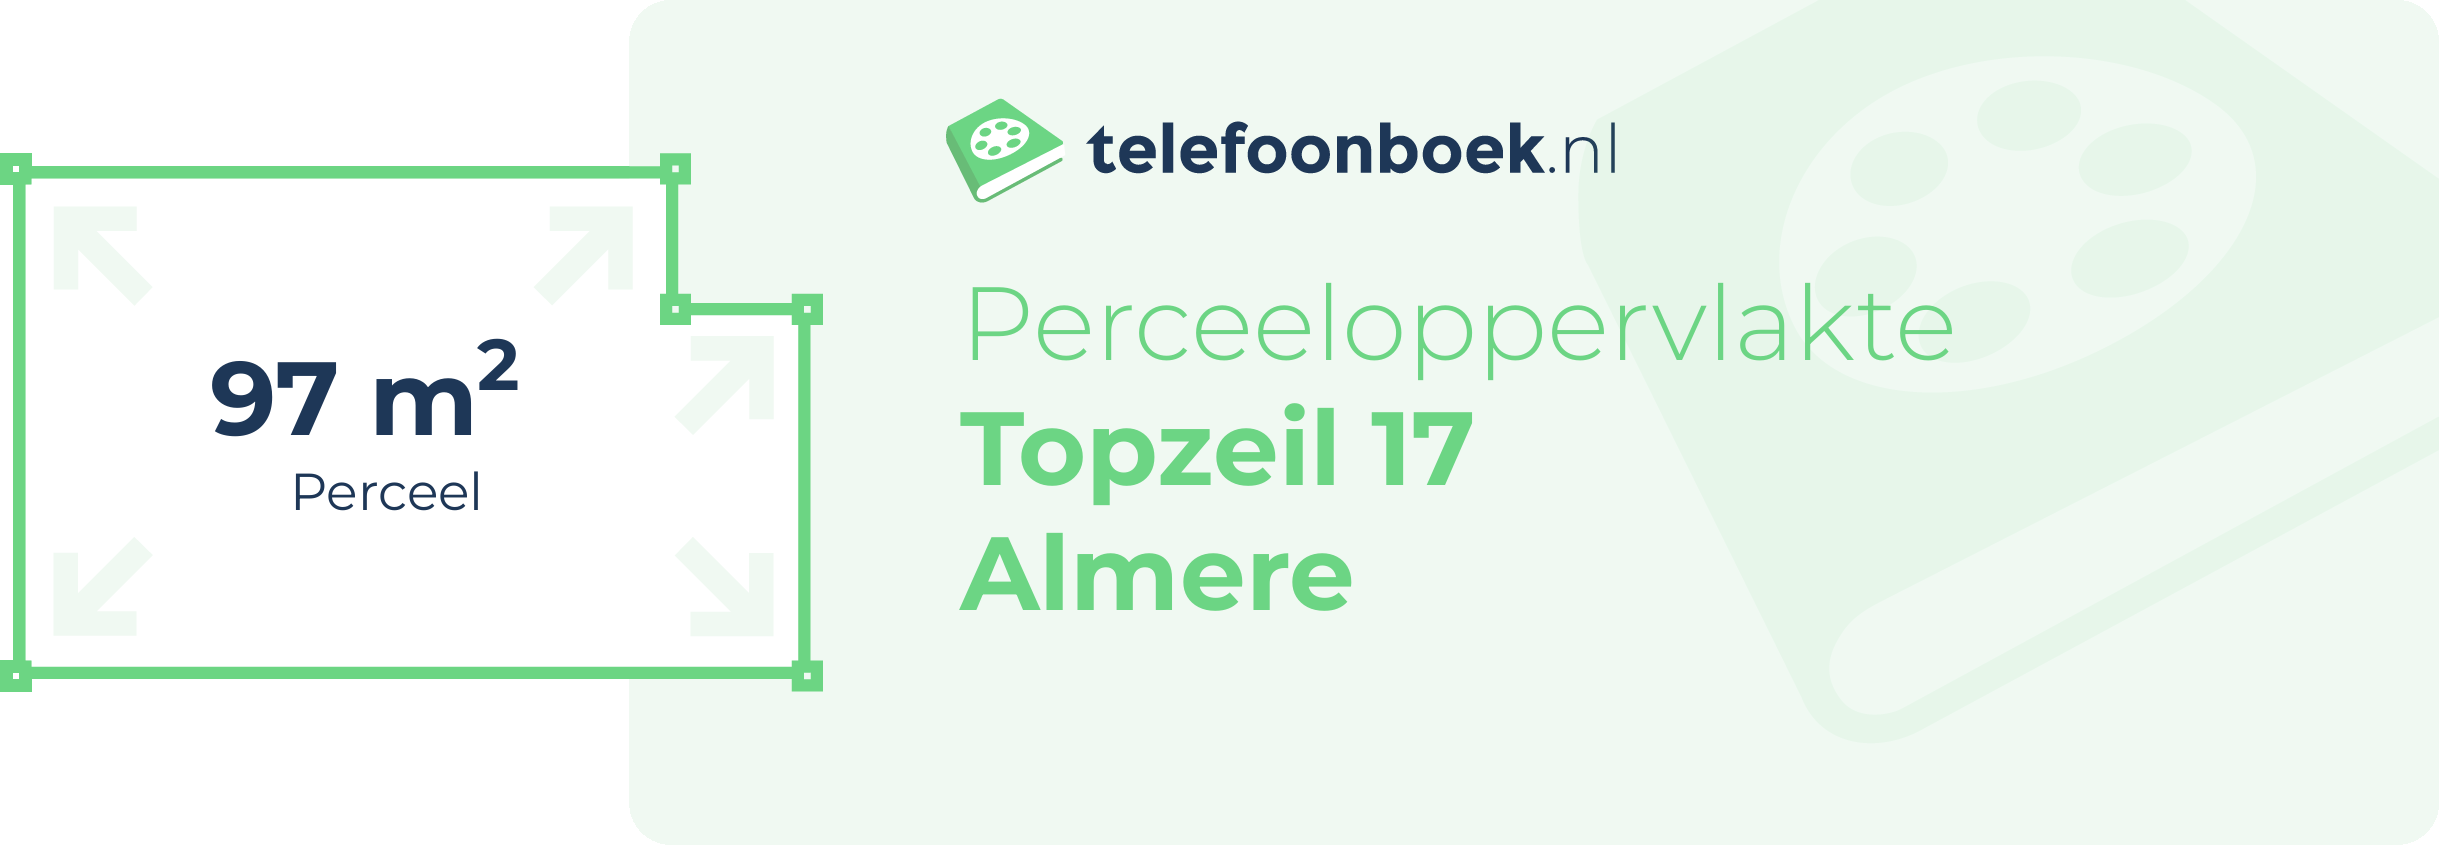 Perceeloppervlakte Topzeil 17 Almere